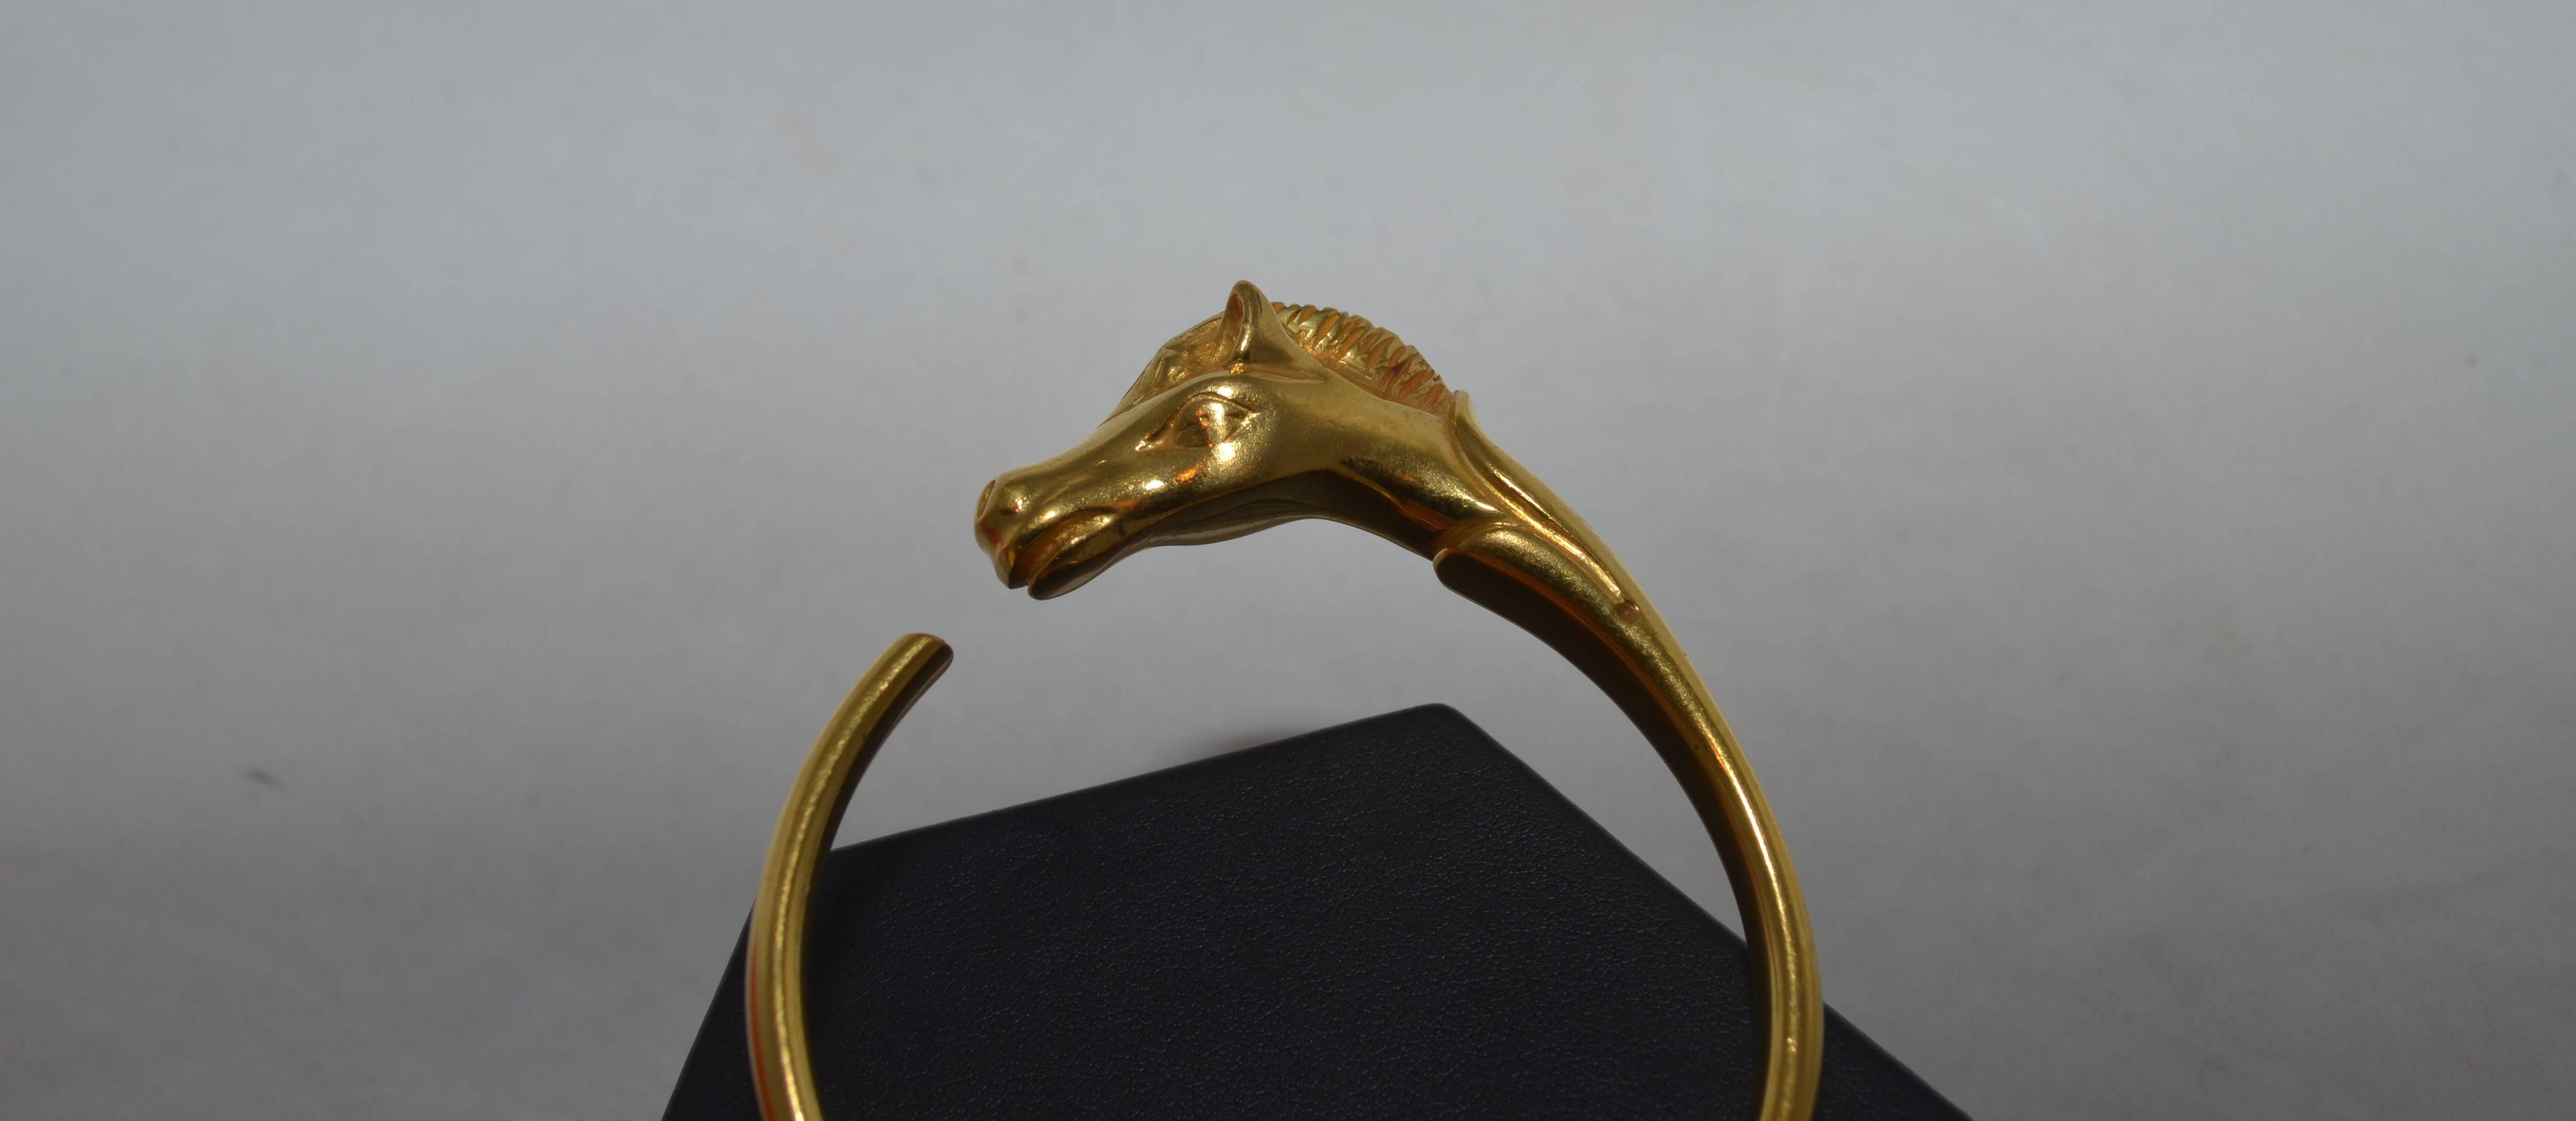 hermes horse head bracelet